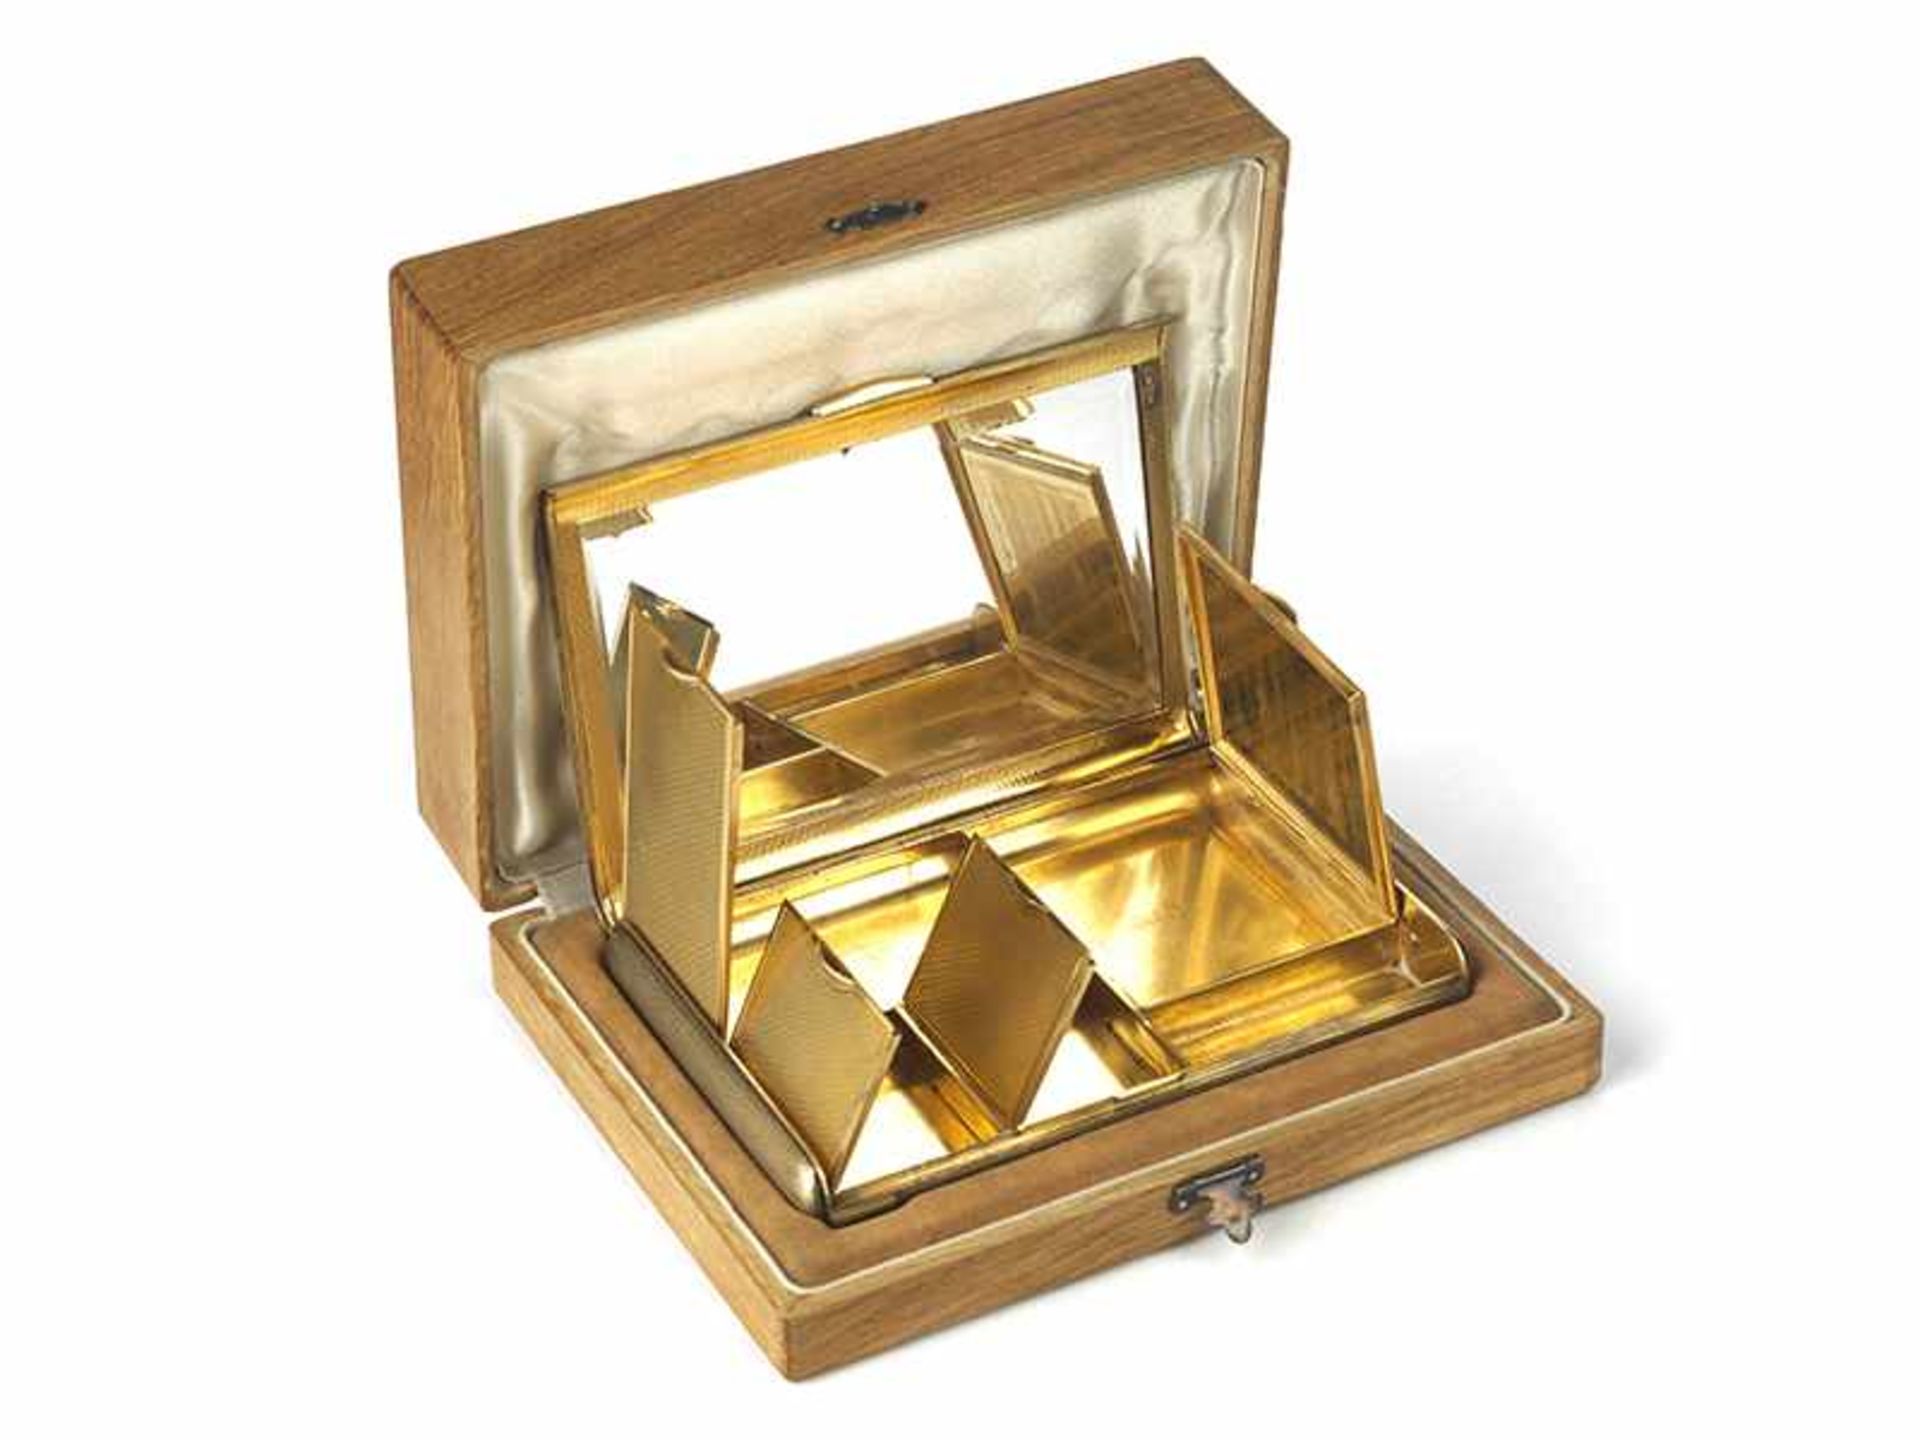 Vergoldetes, reich kassetiertes Etui 2 x 15 x 10,1 cm. Gewicht: 482 g. Steckleiste vierfach mit - Bild 4 aus 17